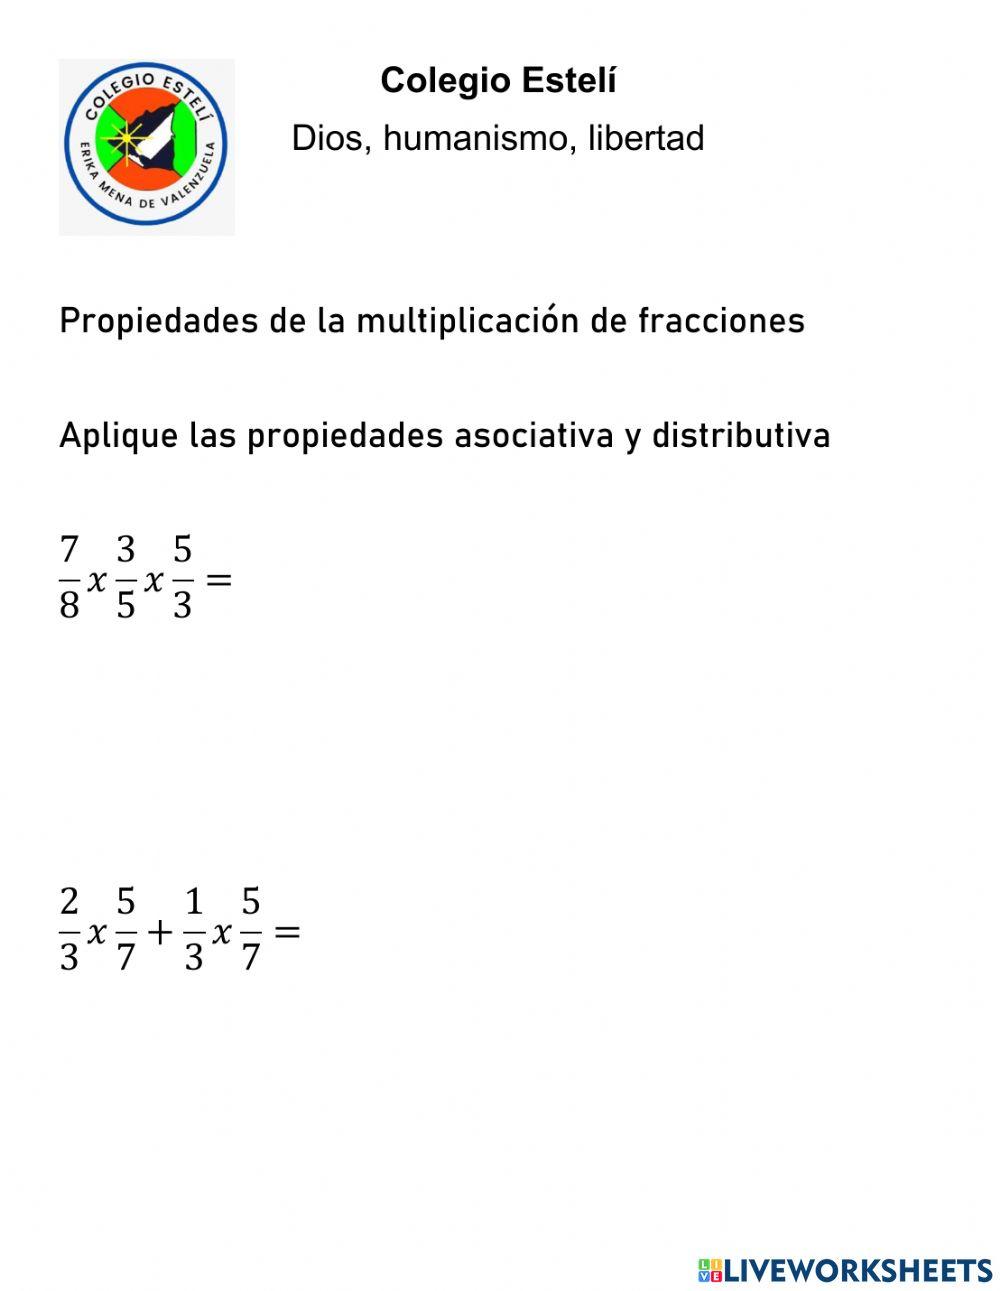 Propiedades de la multiplicacion de fracciones